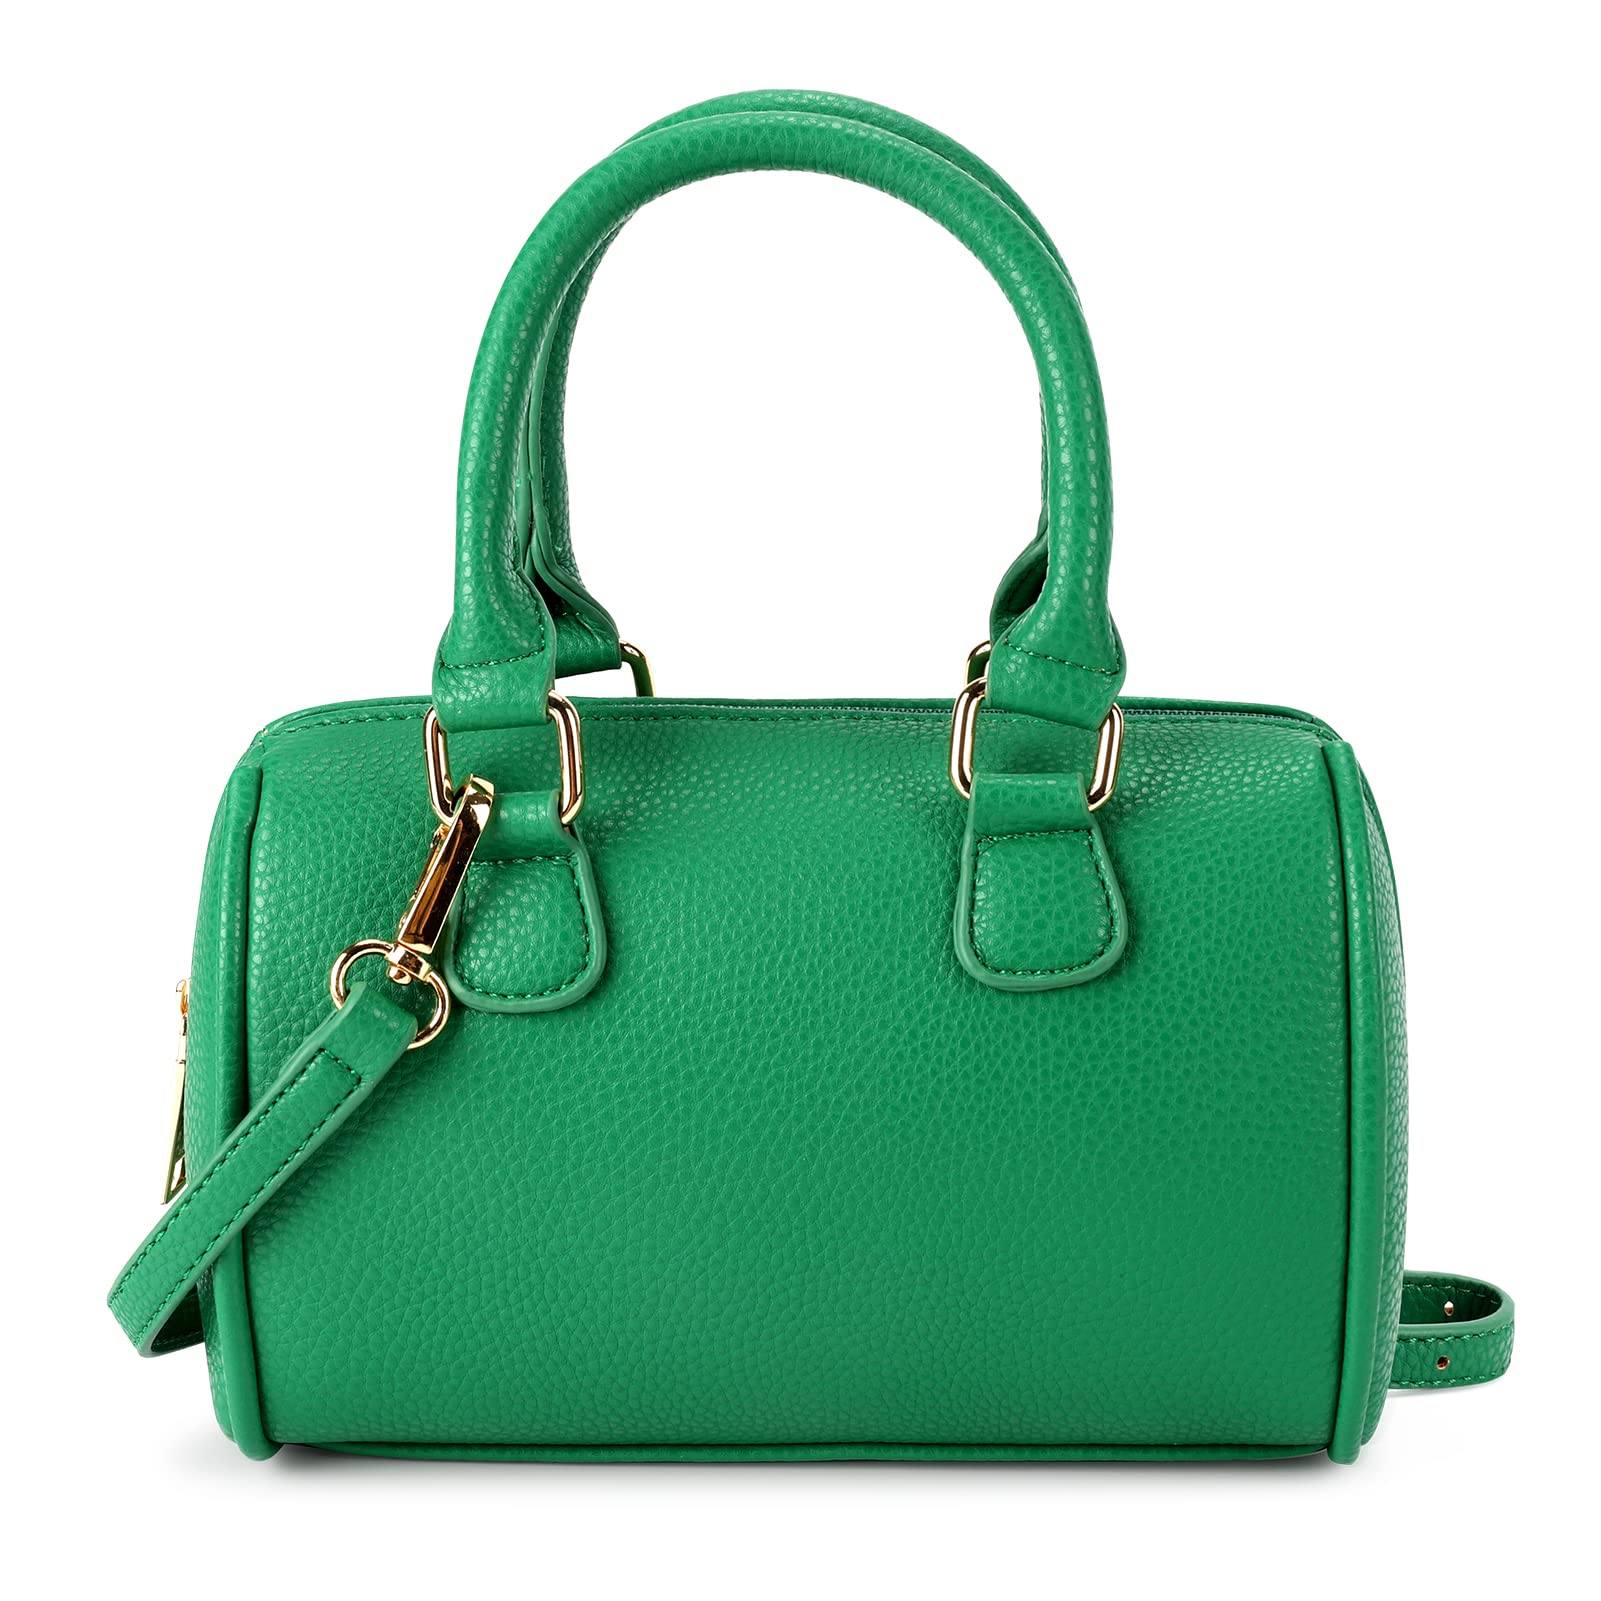 So Grown-Up Handbag Mibasies Green 